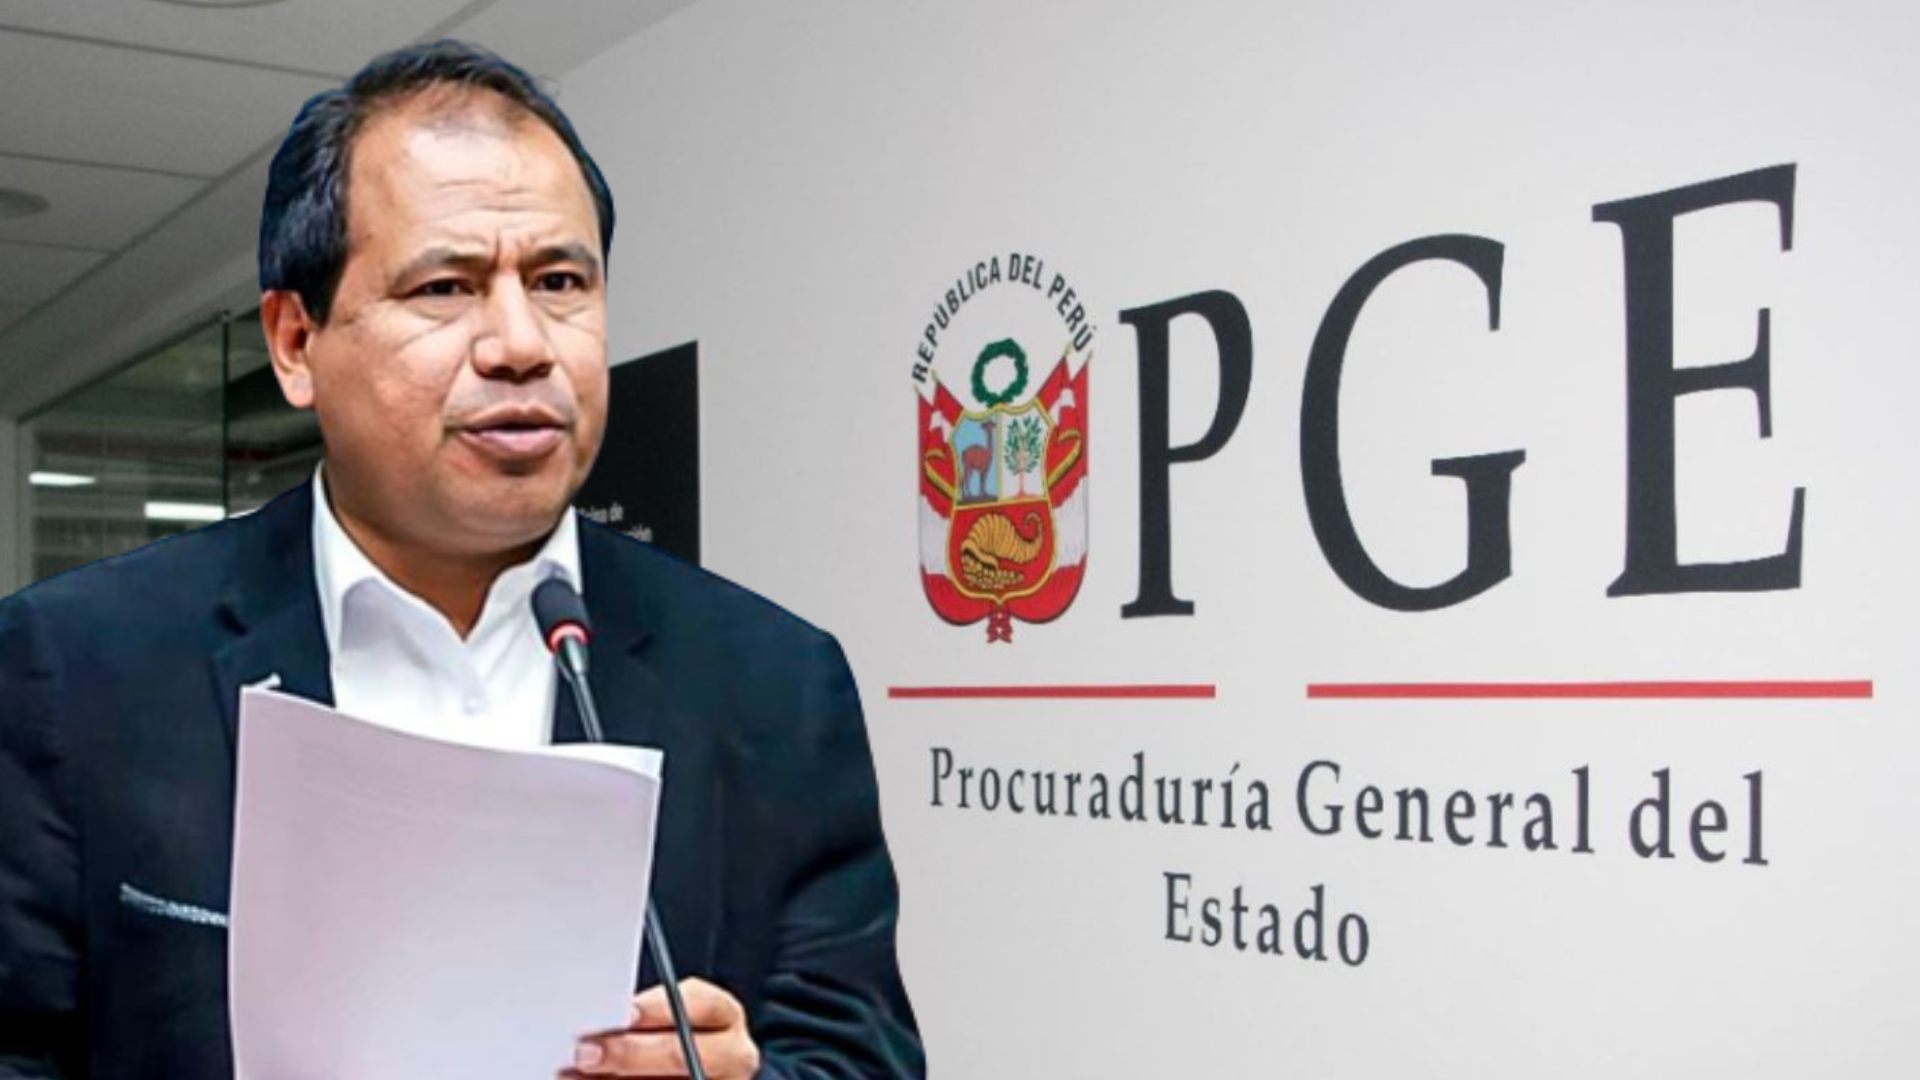 Procuraduría denunció al congresista Edgar Tello por concusión ante presunto recorte de sueldo.
Foto: Composición Infobae